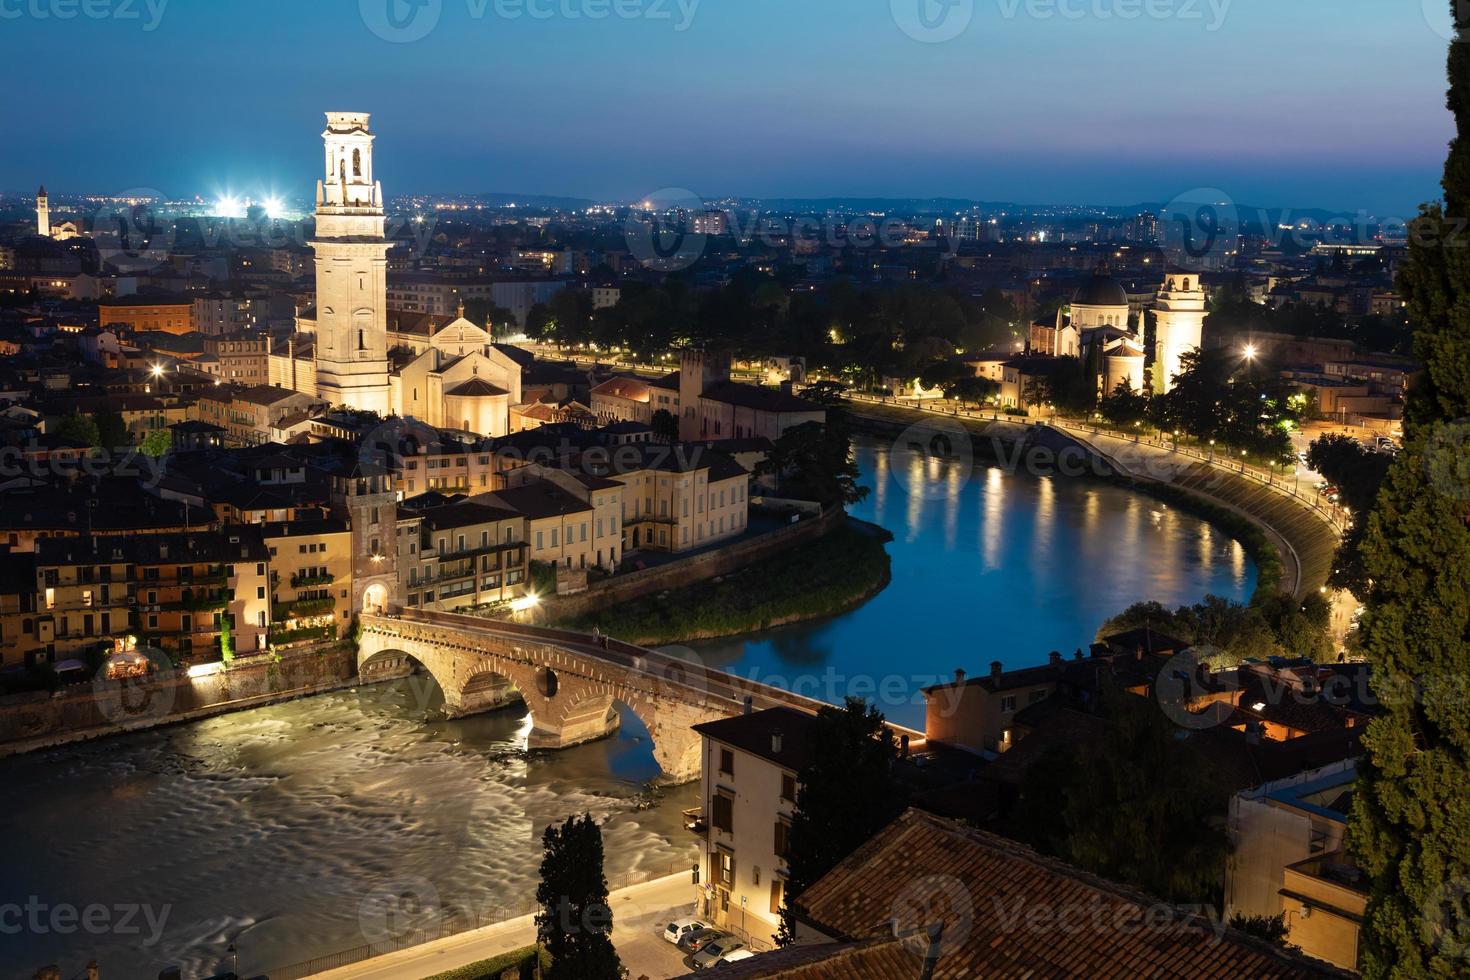 verona, italia - panorama por la noche. paisaje urbano iluminado con puente escénico. foto